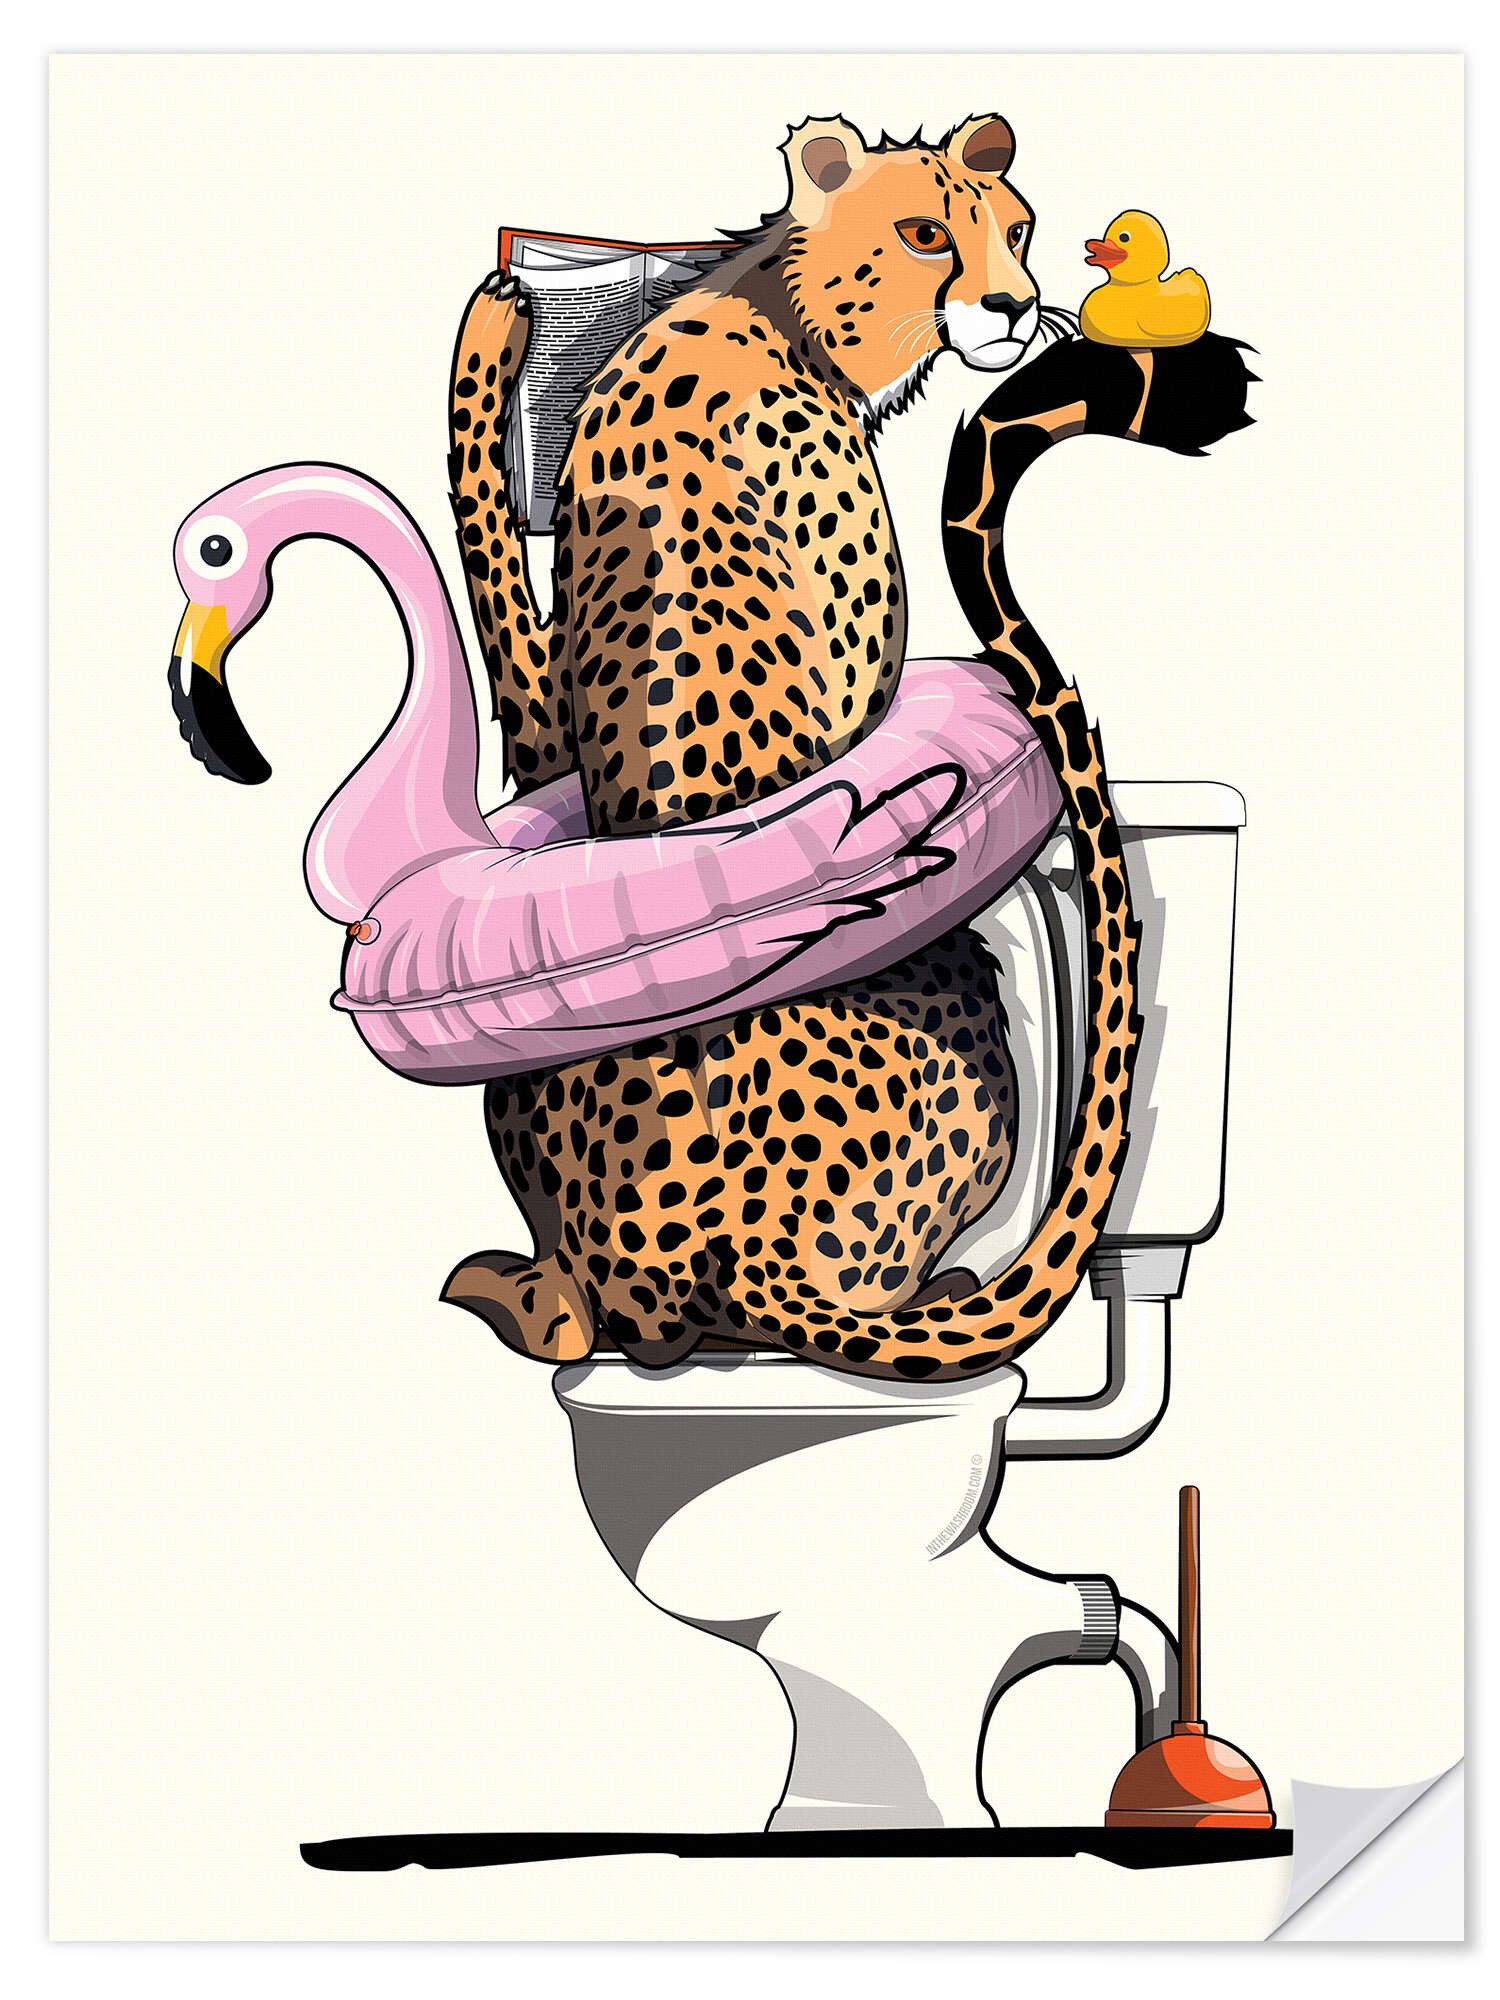 Posterlounge Wandfolie Wyatt9, Gepard auf der Toilette, Badezimmer Illustration